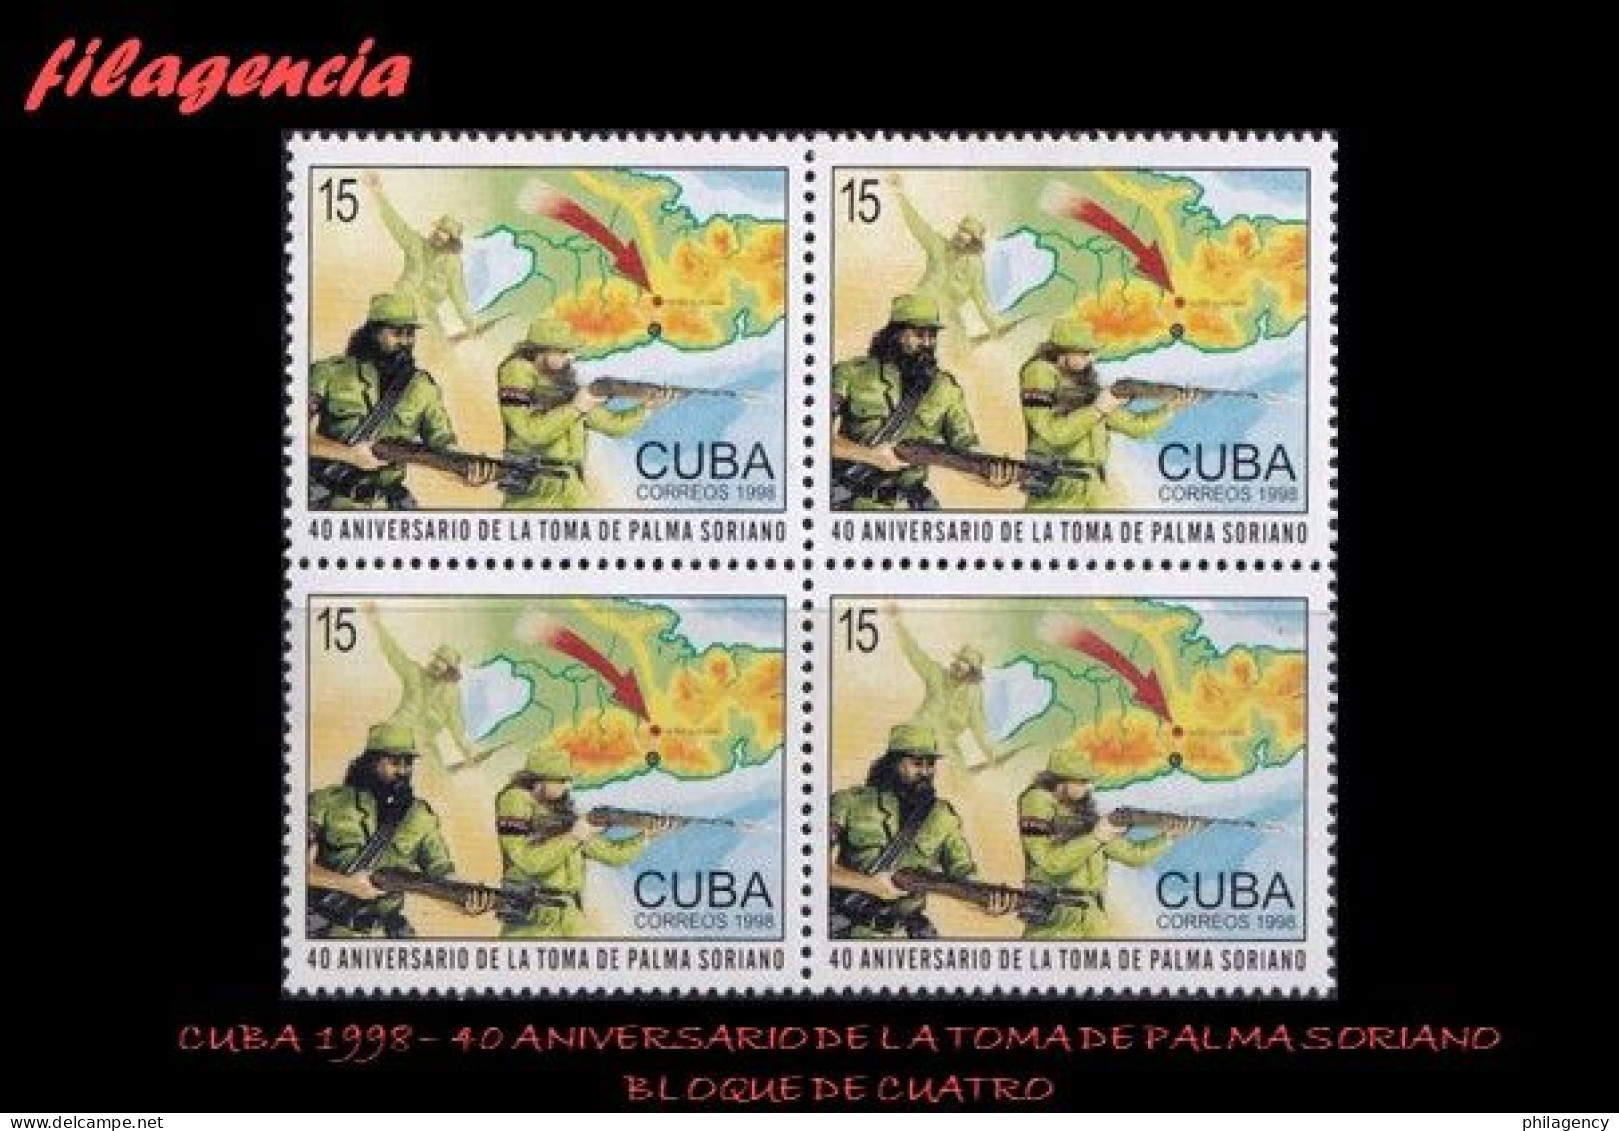 CUBA. BLOQUES DE CUATRO. 1998-35 40 ANIVERSARIO DE LA TOMA DE PALMA SORIANO - Nuovi